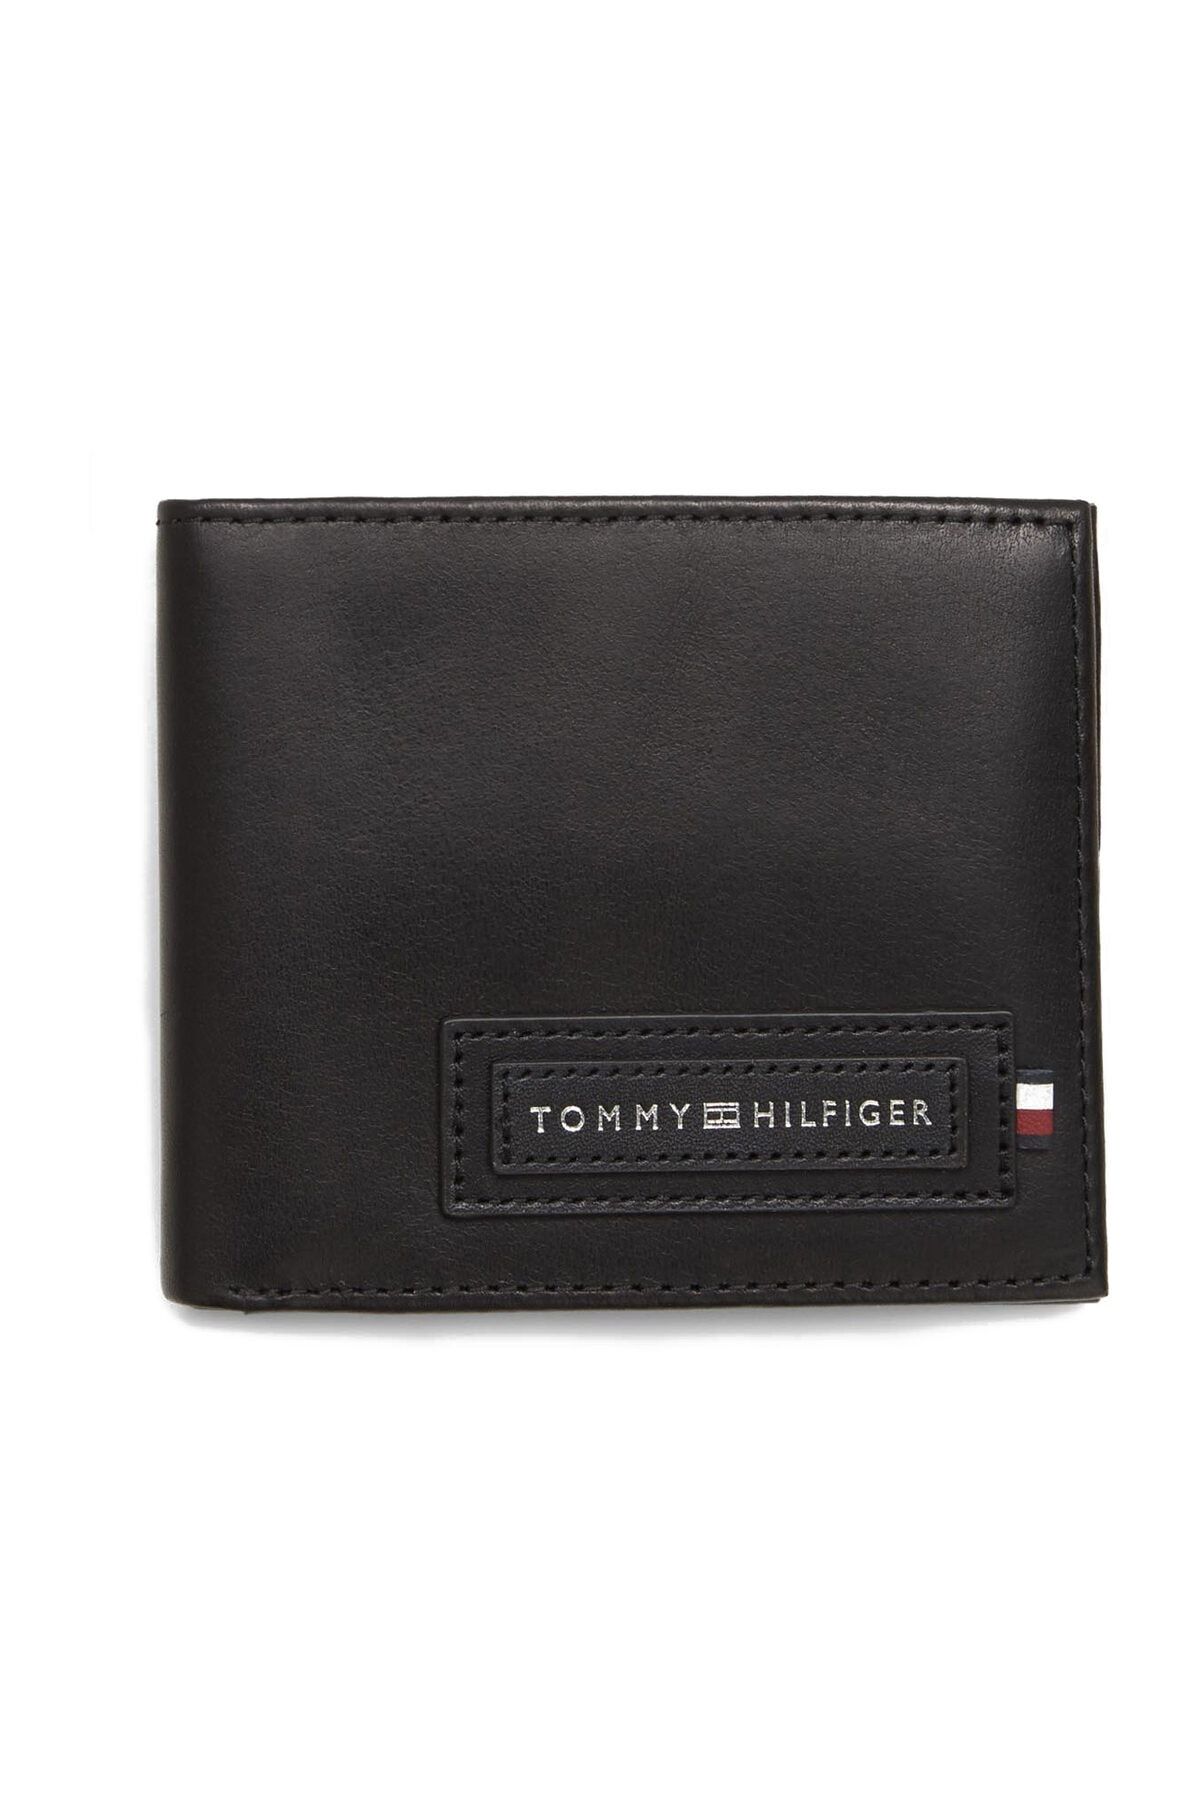 Tommy Hilfiger Modern Cc Wallet & Key Fob